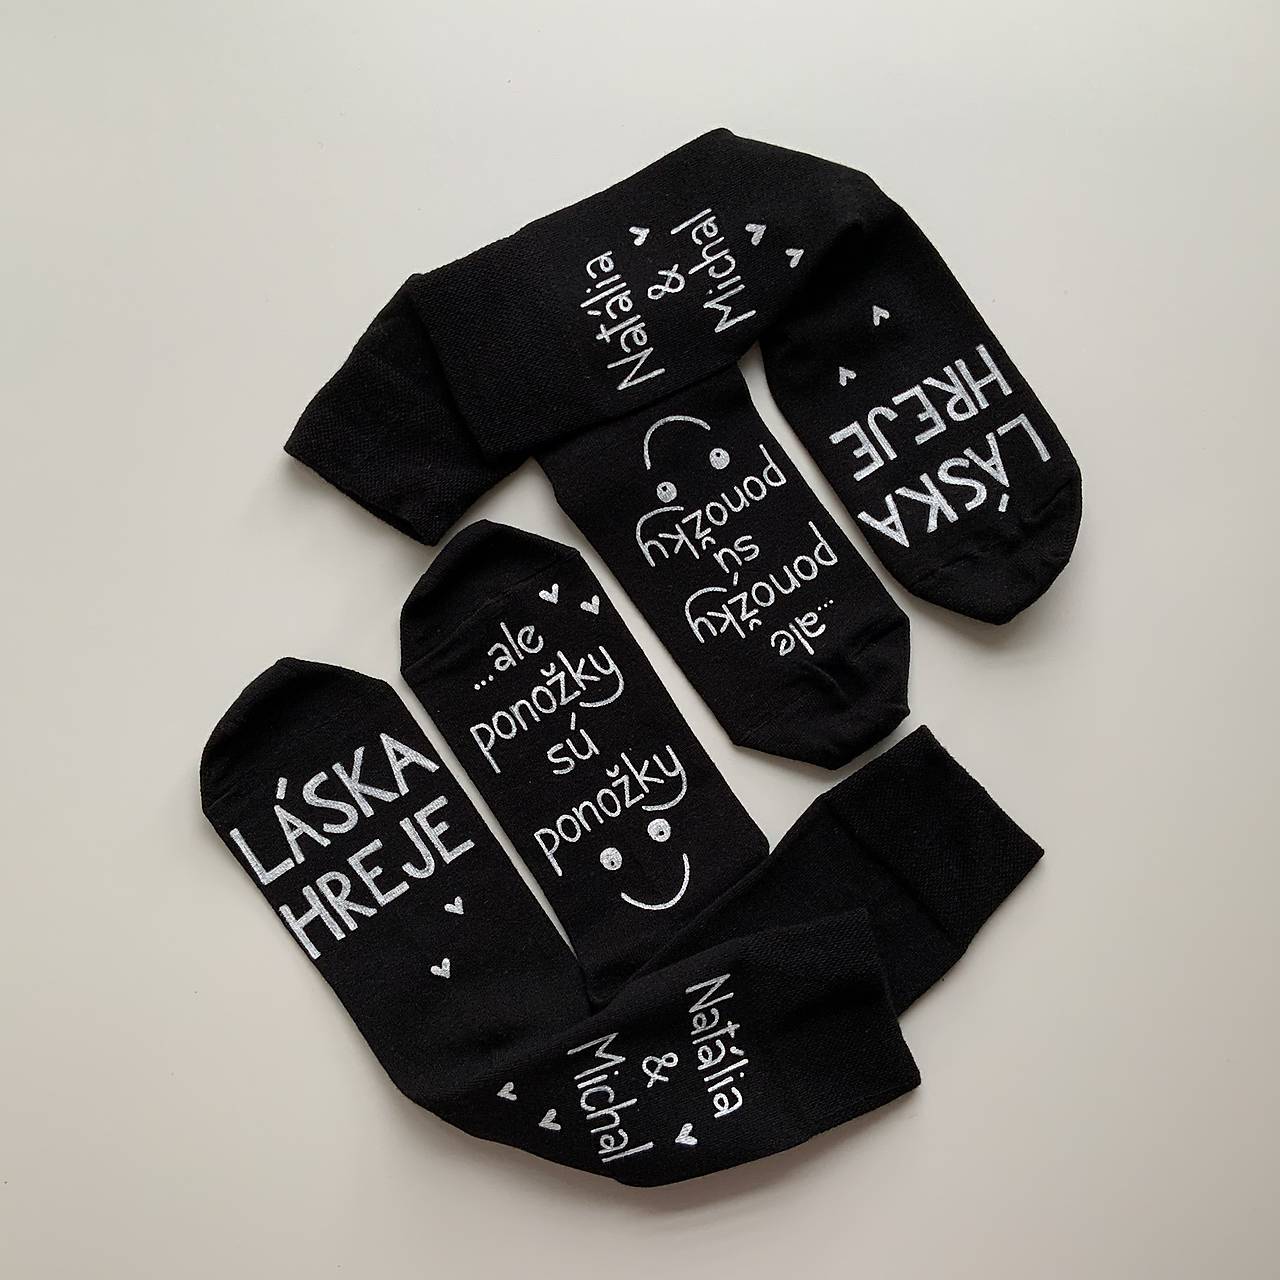 Maľované ponožky s nápisom “LÁSKA HREJE, ale ponožky sú ponožky :) (sada 2 párov (čiernych) s menami manželov)